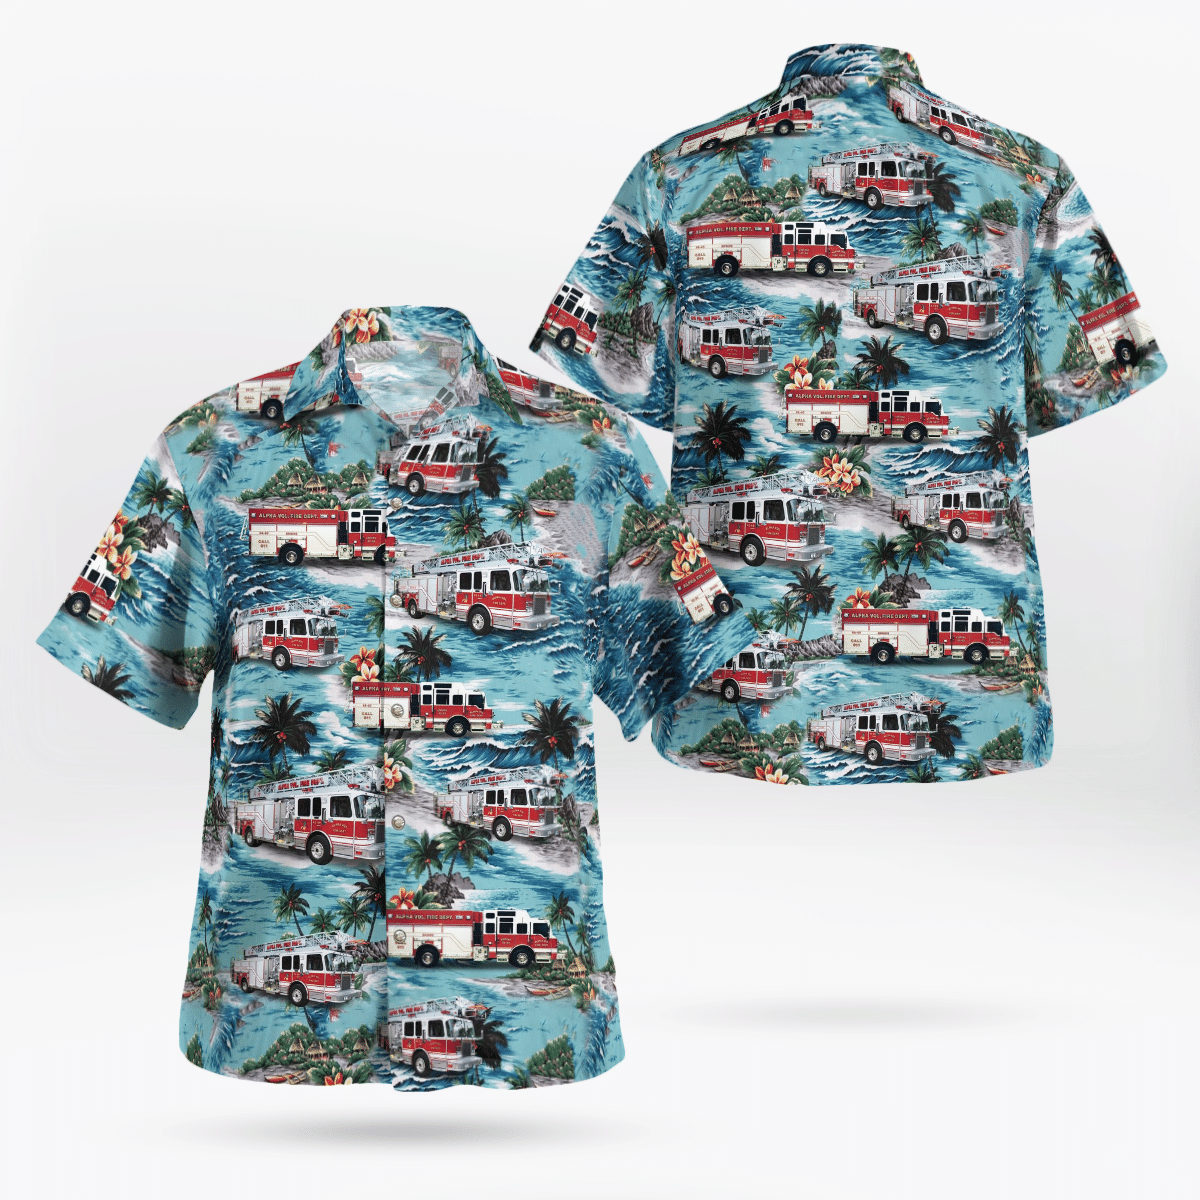 Best Hawaiian shirts 2022 100